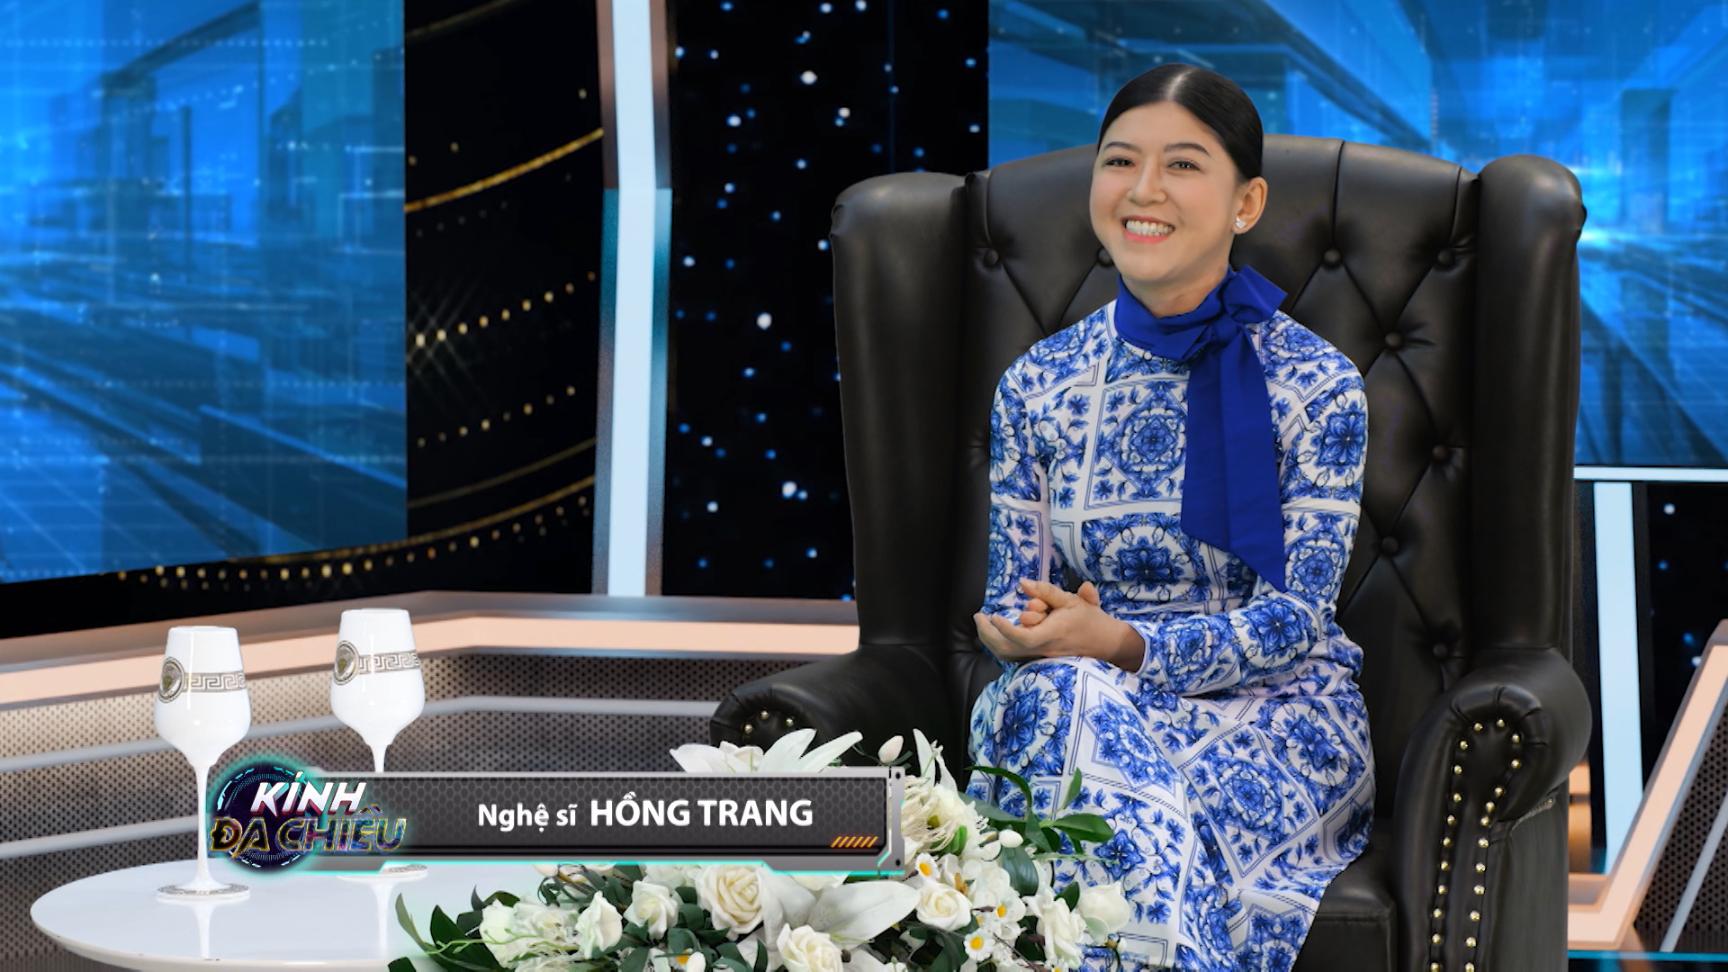 KINH DA CHIEU 4 Hồng Trang tự nhận chảnh vì từ chối hợp tác với nghệ sĩ nổi tiếng 